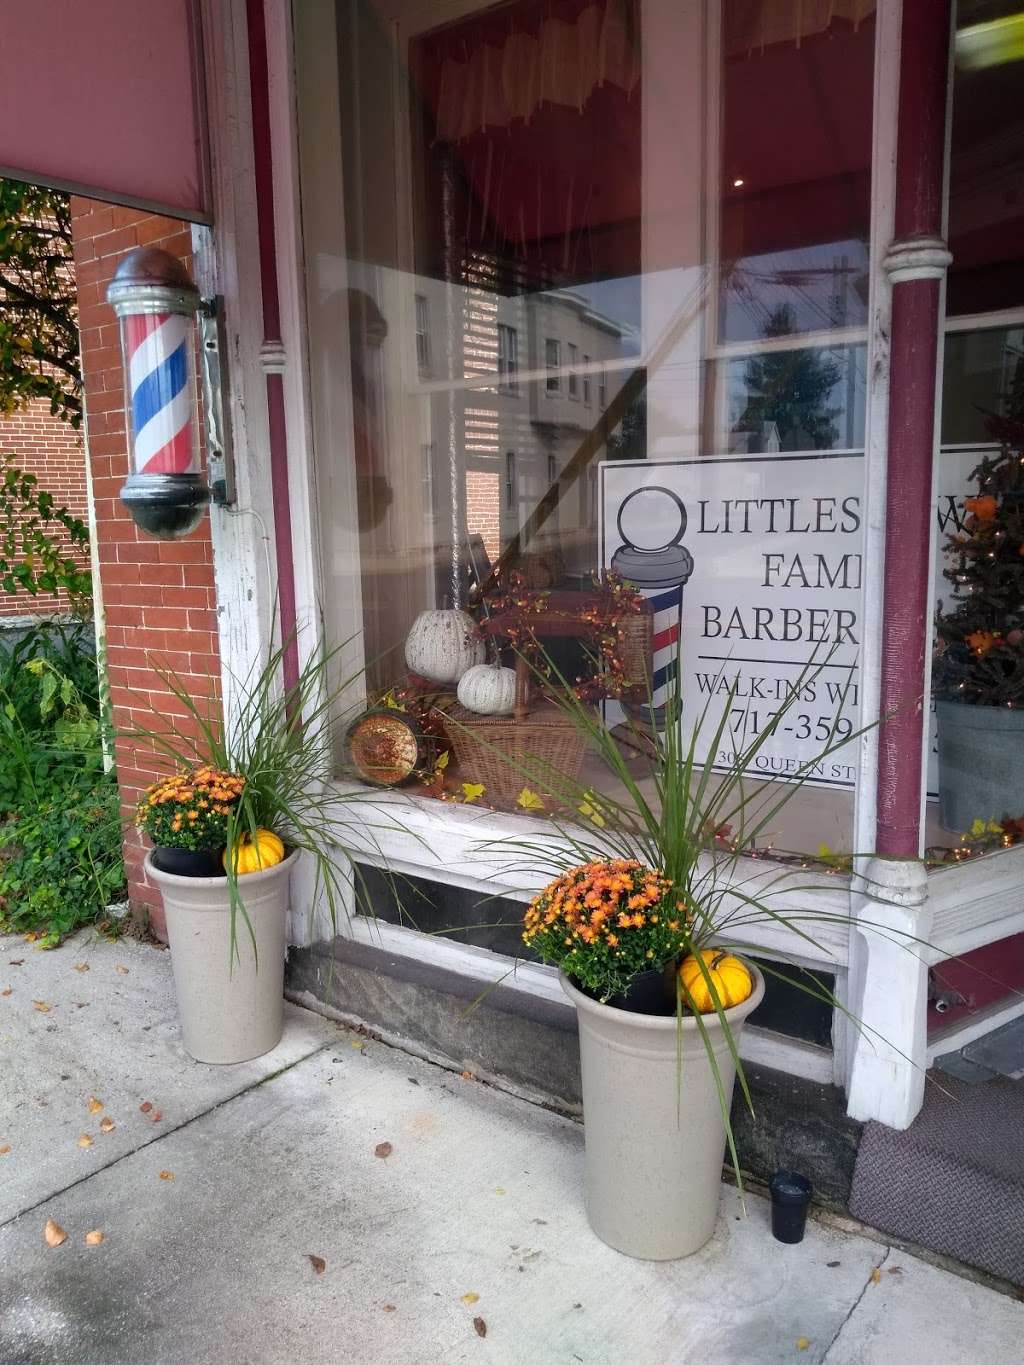 Littlestown Family Barbershop | 1602, 30 S Queen St, Littlestown, PA 17340 | Phone: (717) 640-1405